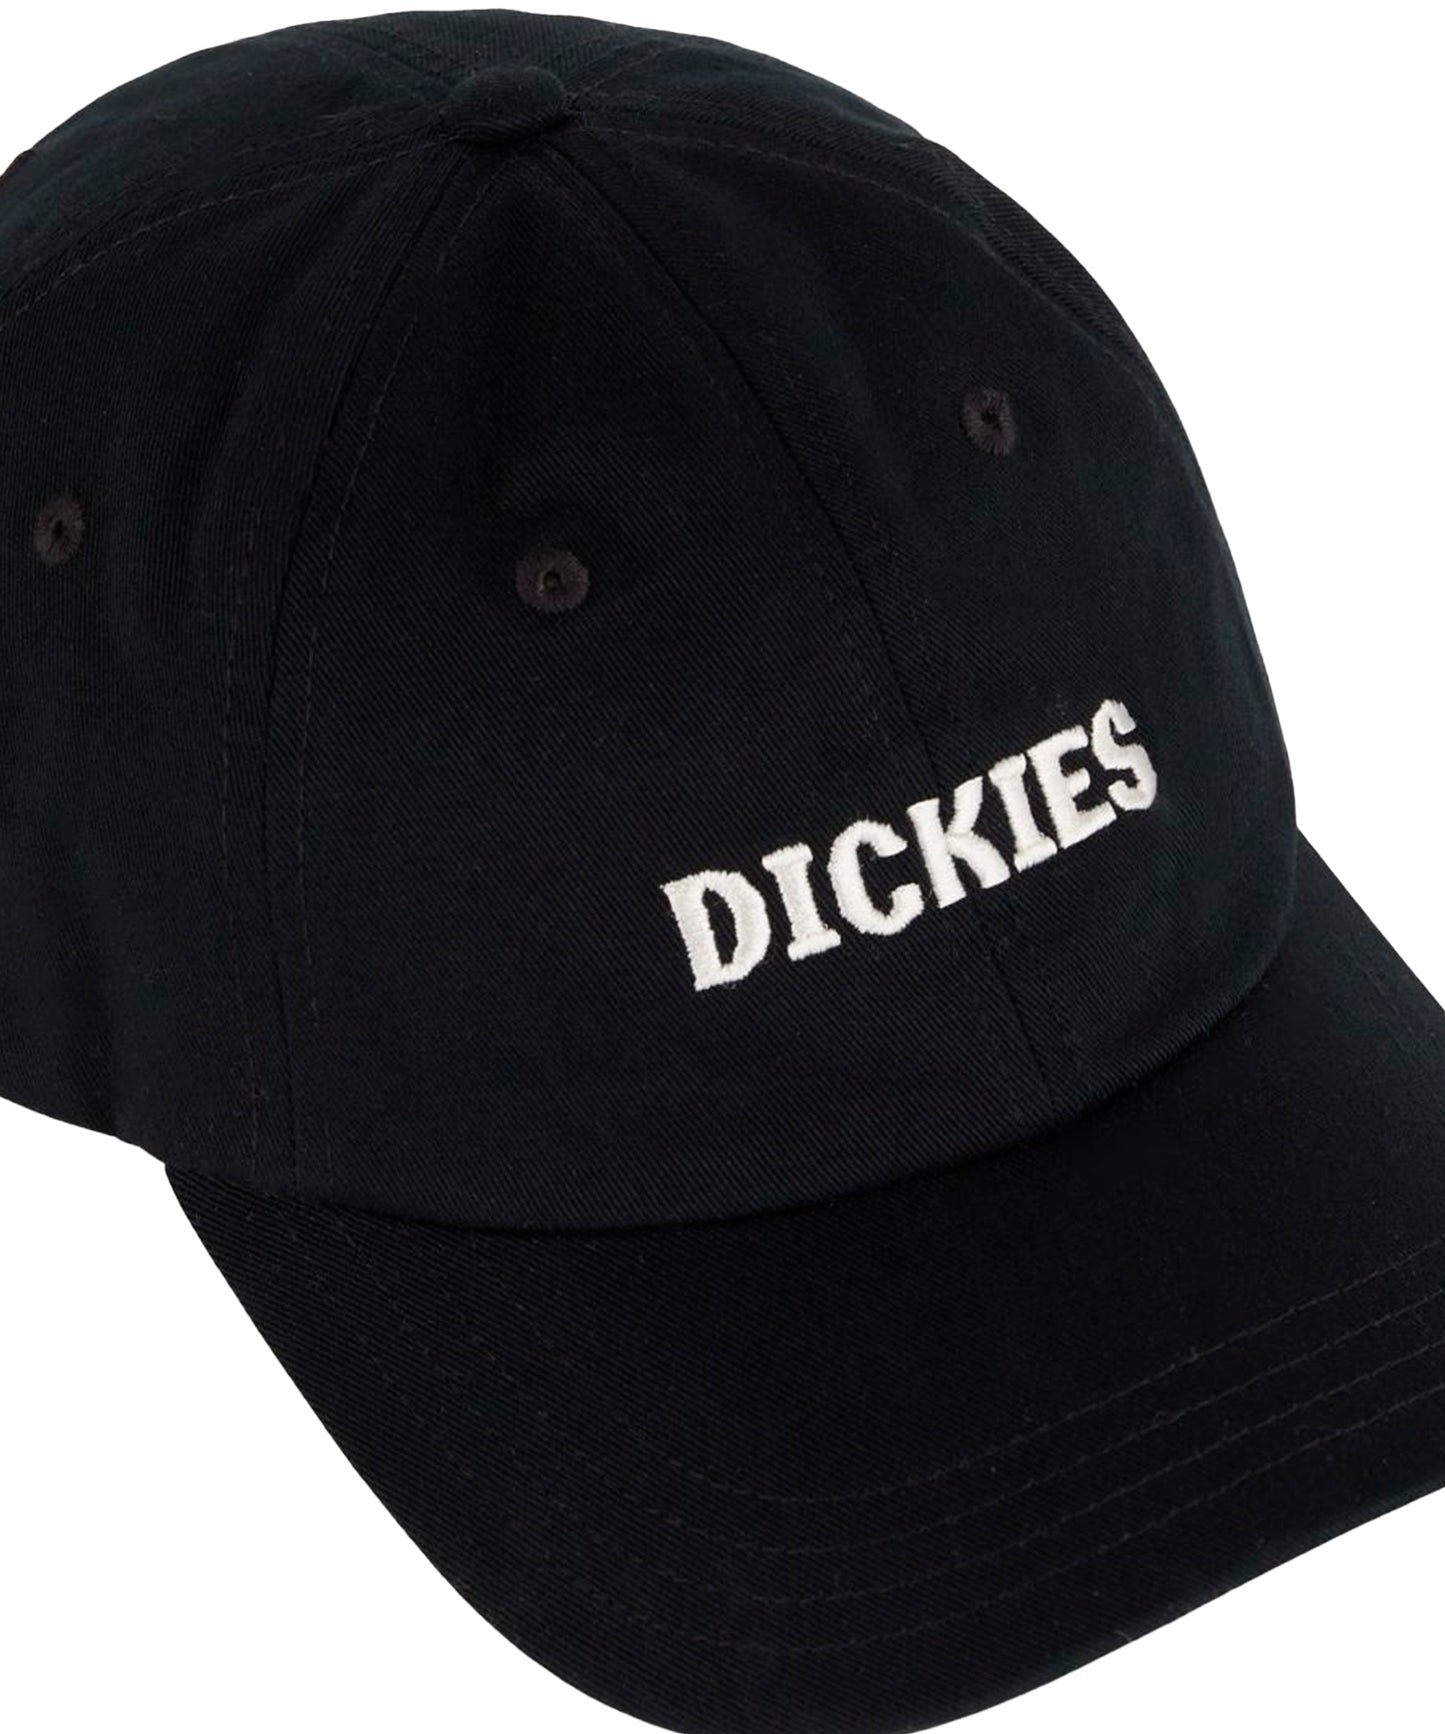 dickies-gorra-hays-color-negro-sarga-algodón-logo-dickies-Cierre-a-presión-ajustable-estructura-de-6-paneles